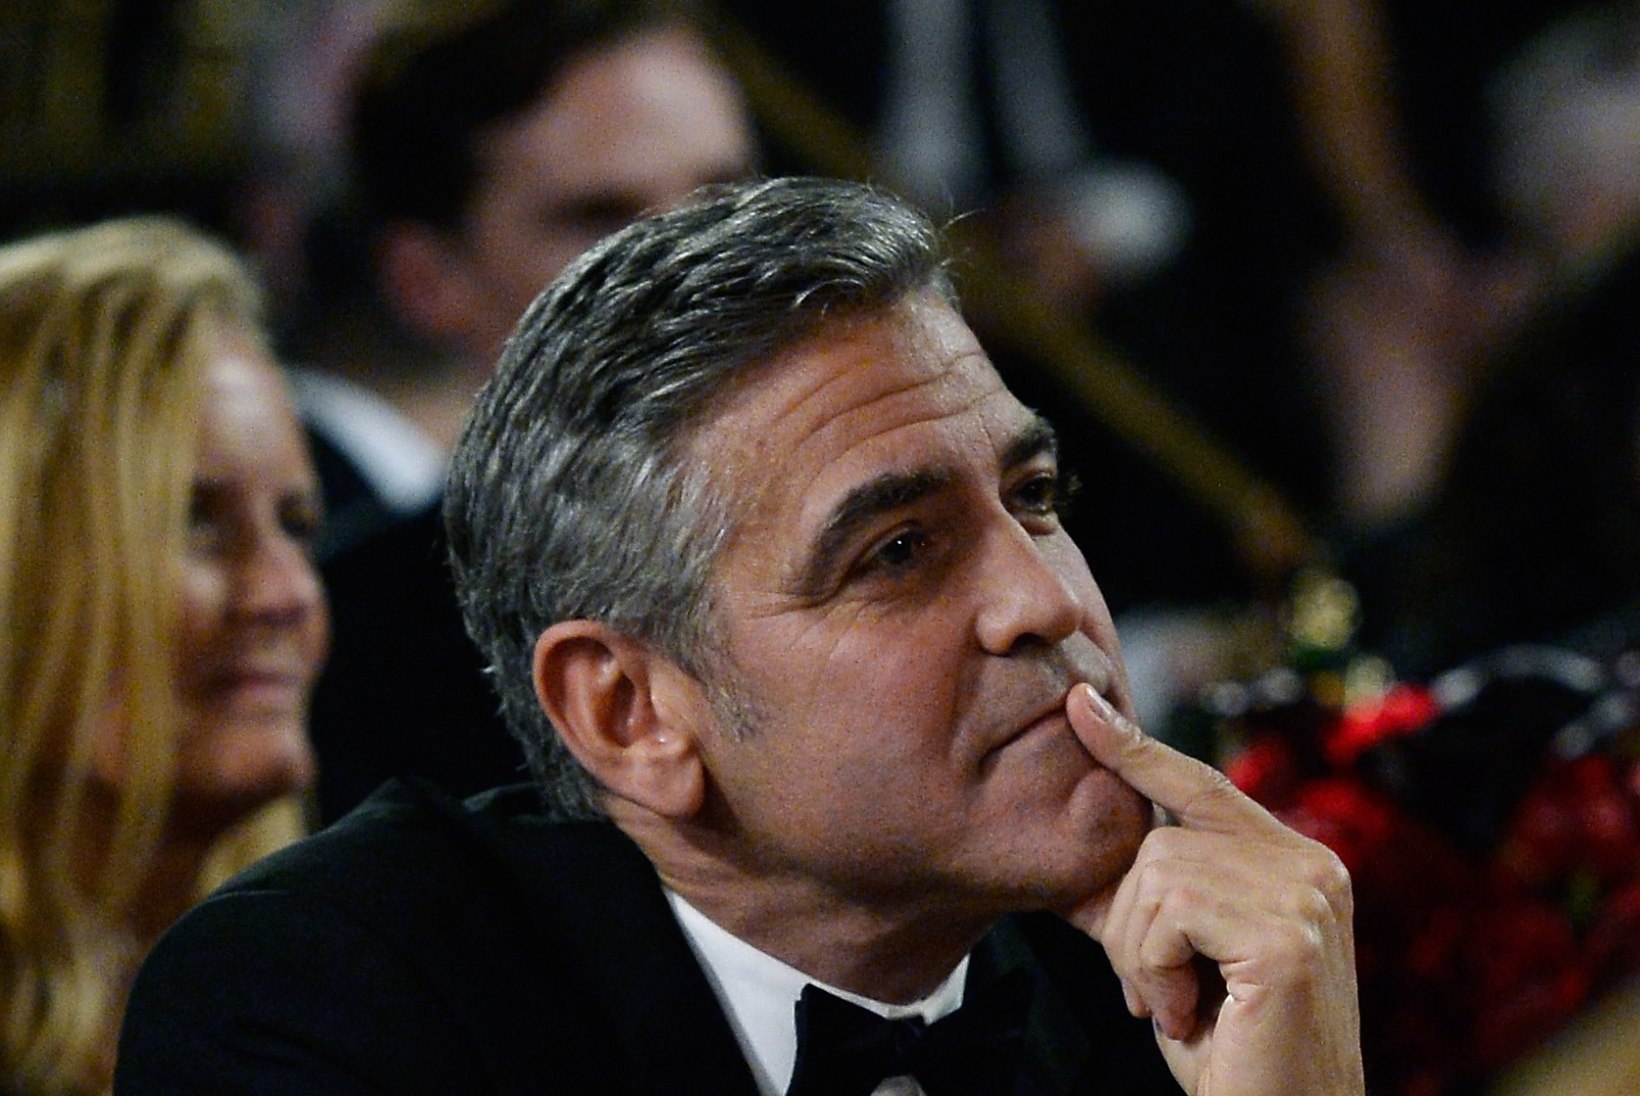 Stingi abikaasa soovitab Clooneyle vanemaid naisi